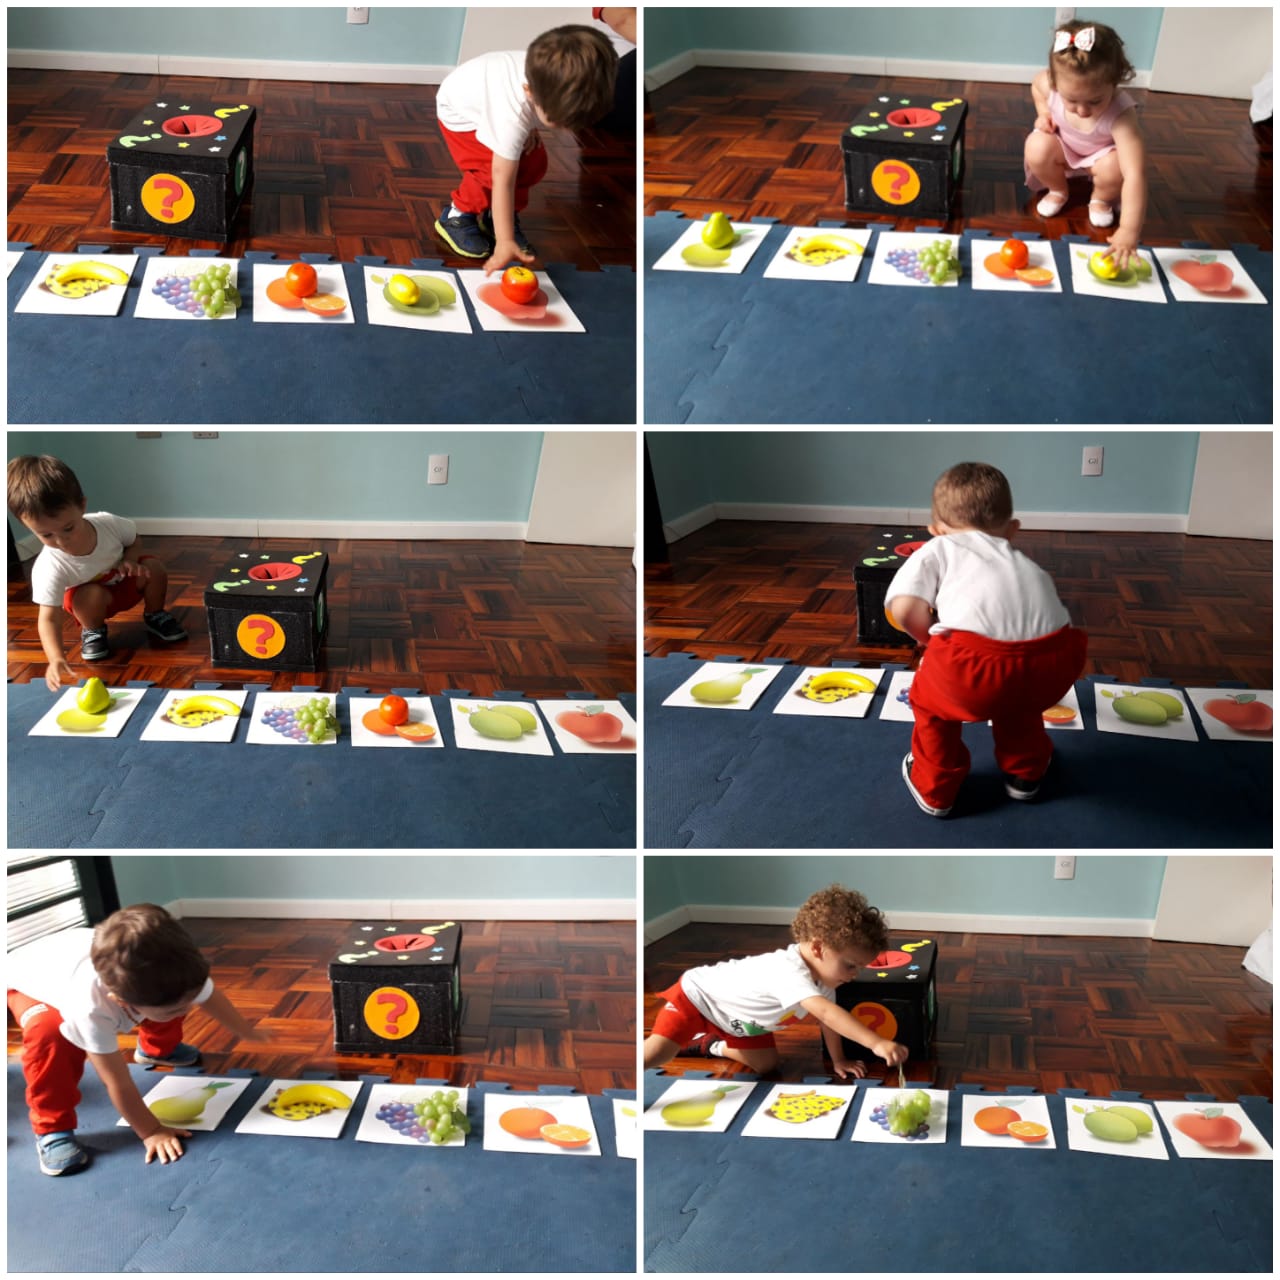 O nosso projeto de inglês “Playtime” teve novidades essa semana: o Maternal II aprendeu sobre as frutas manuseando-as 🍓🍎🍌🍊